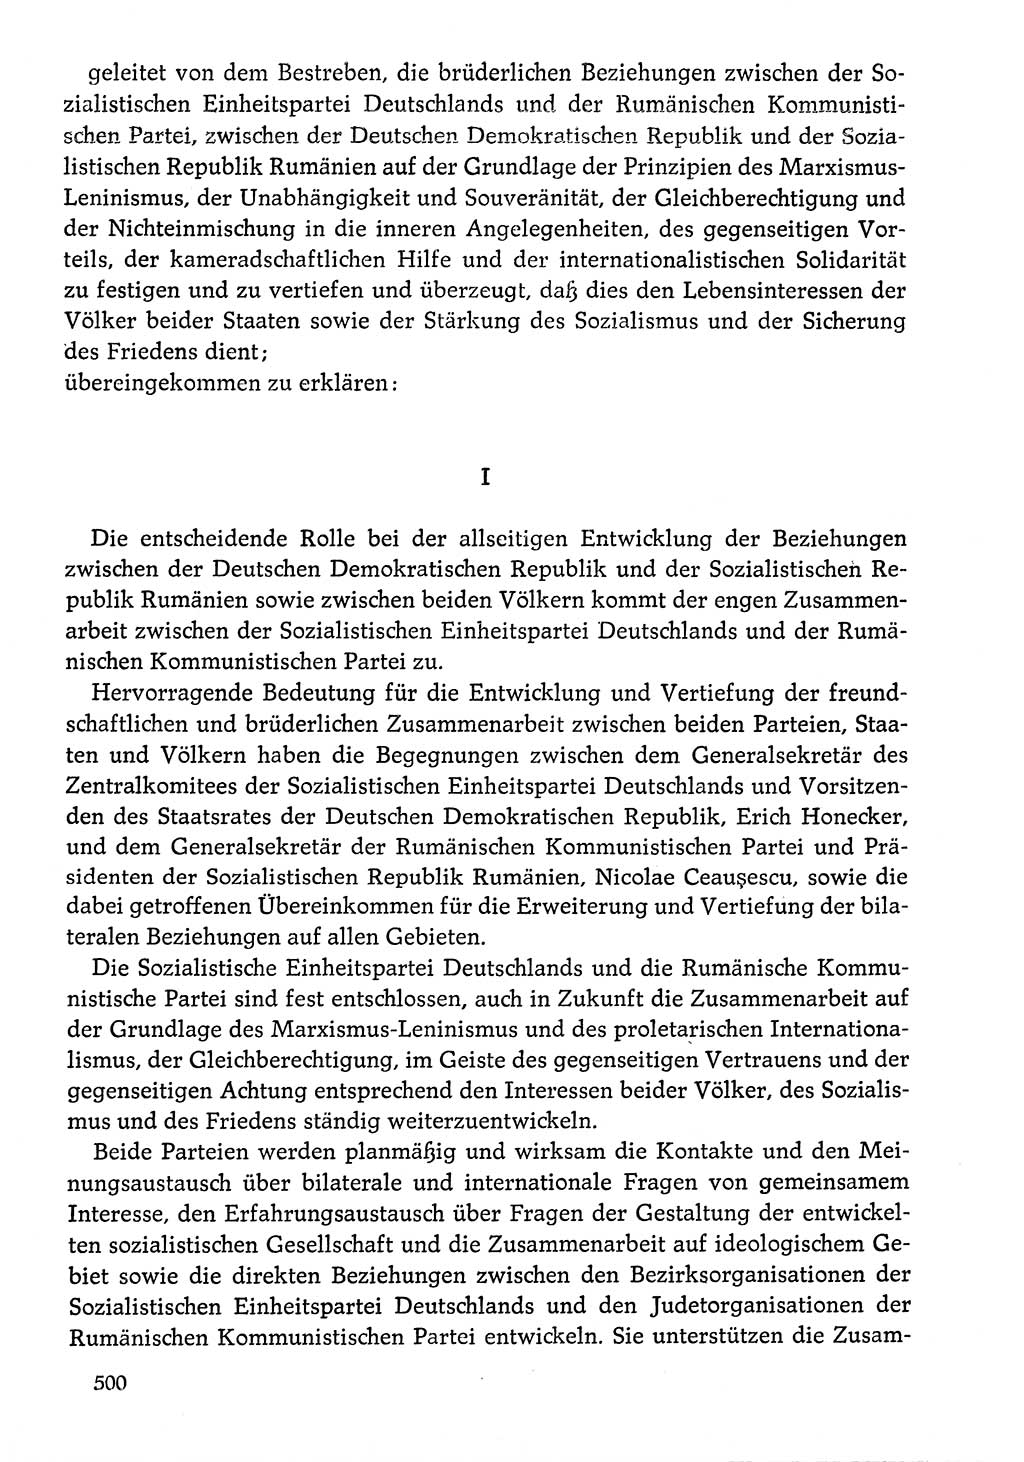 Dokumente der Sozialistischen Einheitspartei Deutschlands (SED) [Deutsche Demokratische Republik (DDR)] 1976-1977, Seite 500 (Dok. SED DDR 1976-1977, S. 500)